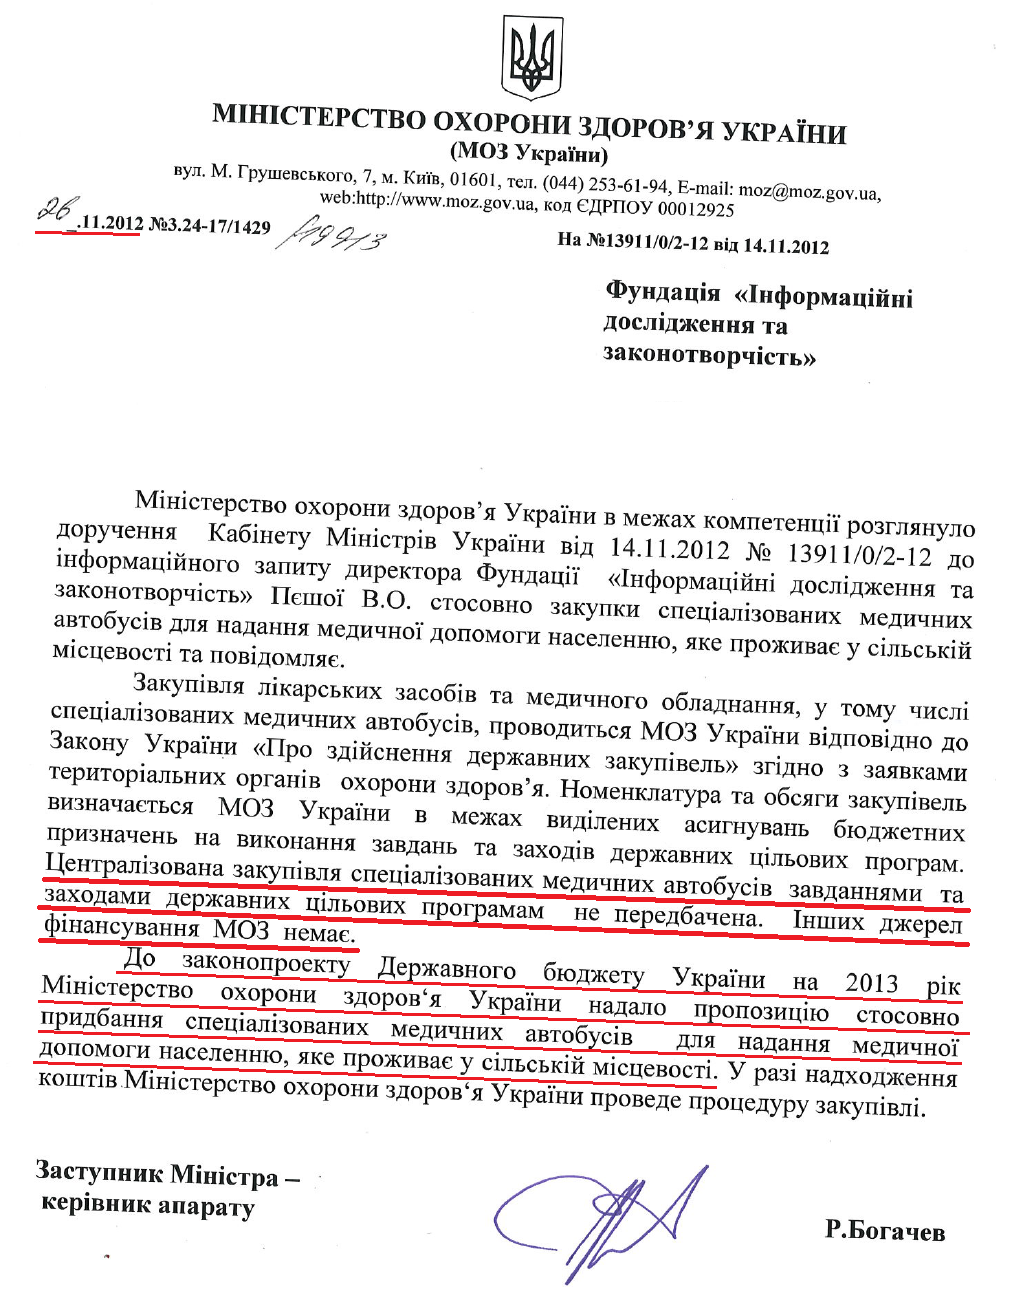 Лист Заступника Міністра охорони здоров'я Р.Богачева від 26 листопада 2012 року